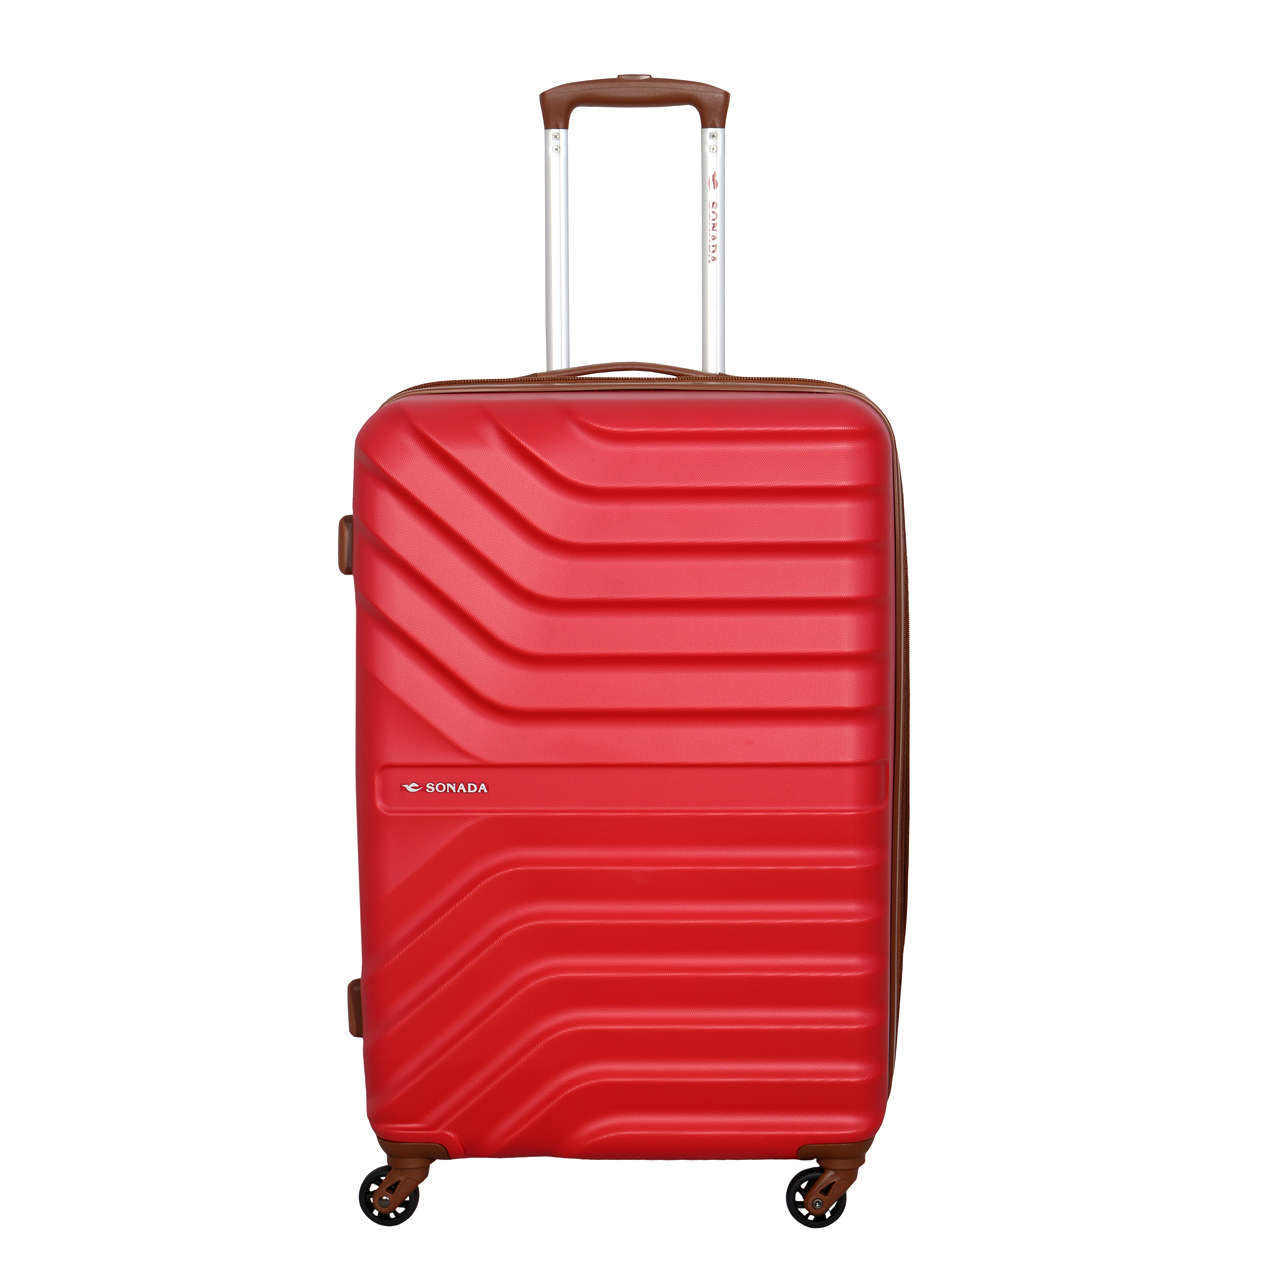 چمدان سونادا مدل 97718 سایز متوسط